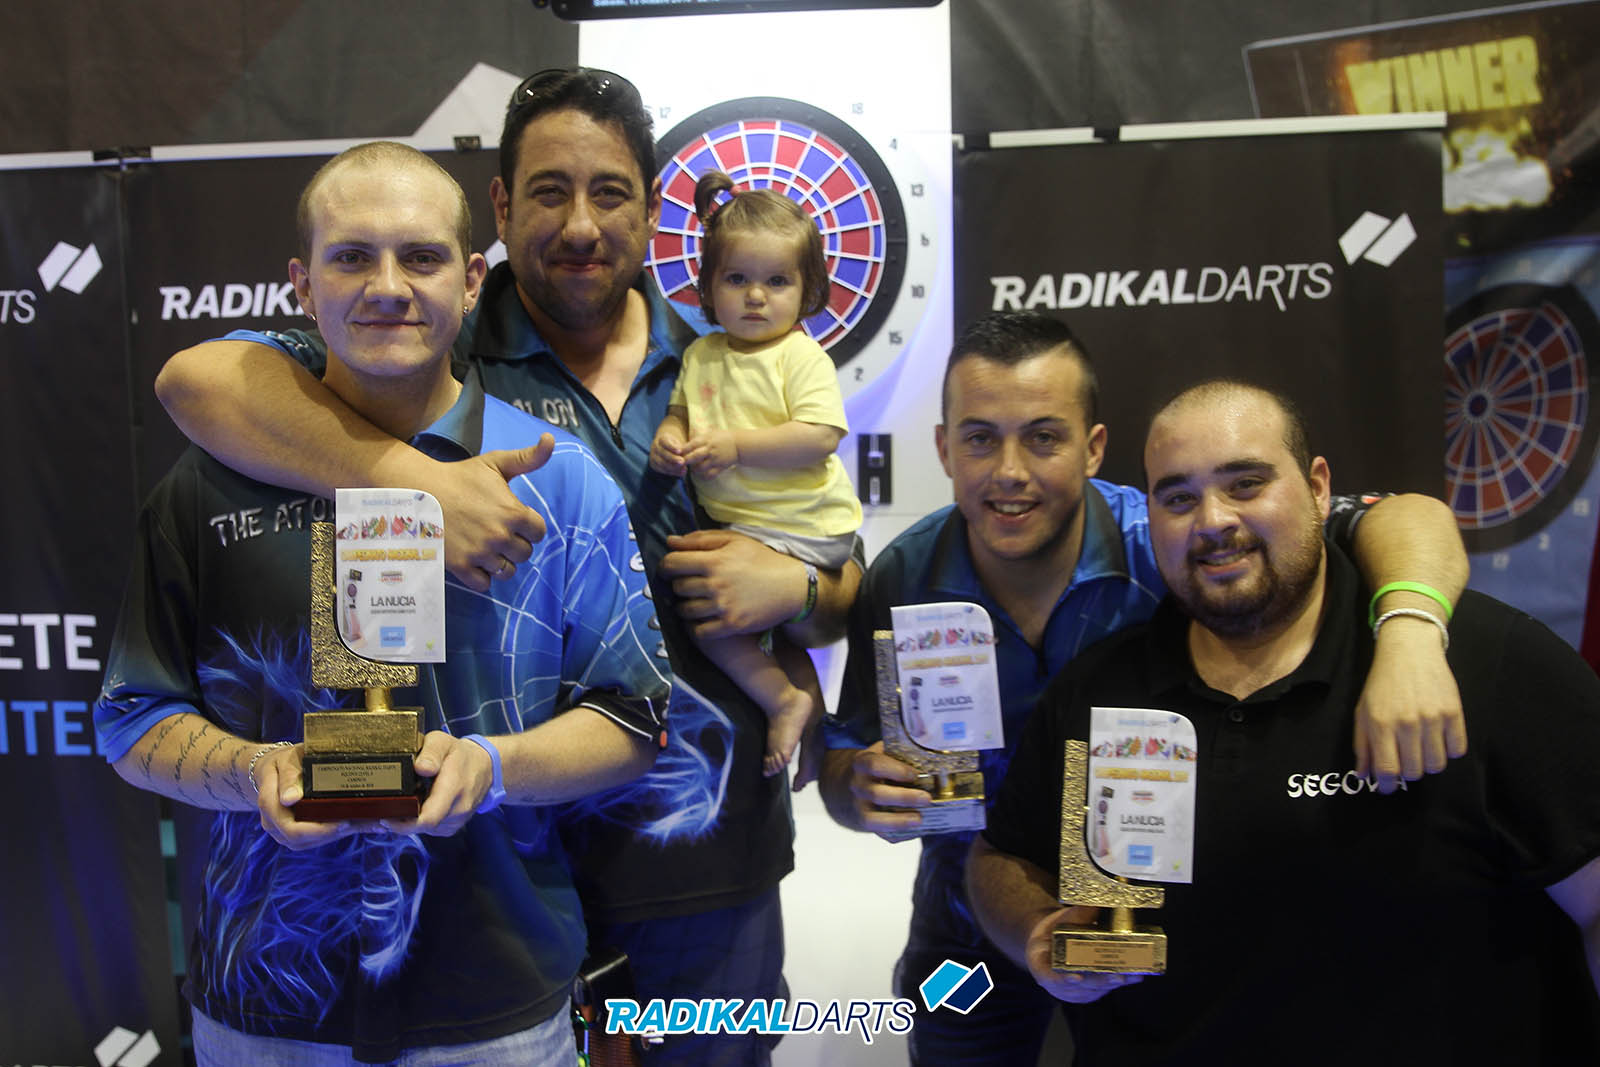 Campeonato Nacional RadikalDarts Fnonbnos Campeón Equipos de Nivel 3